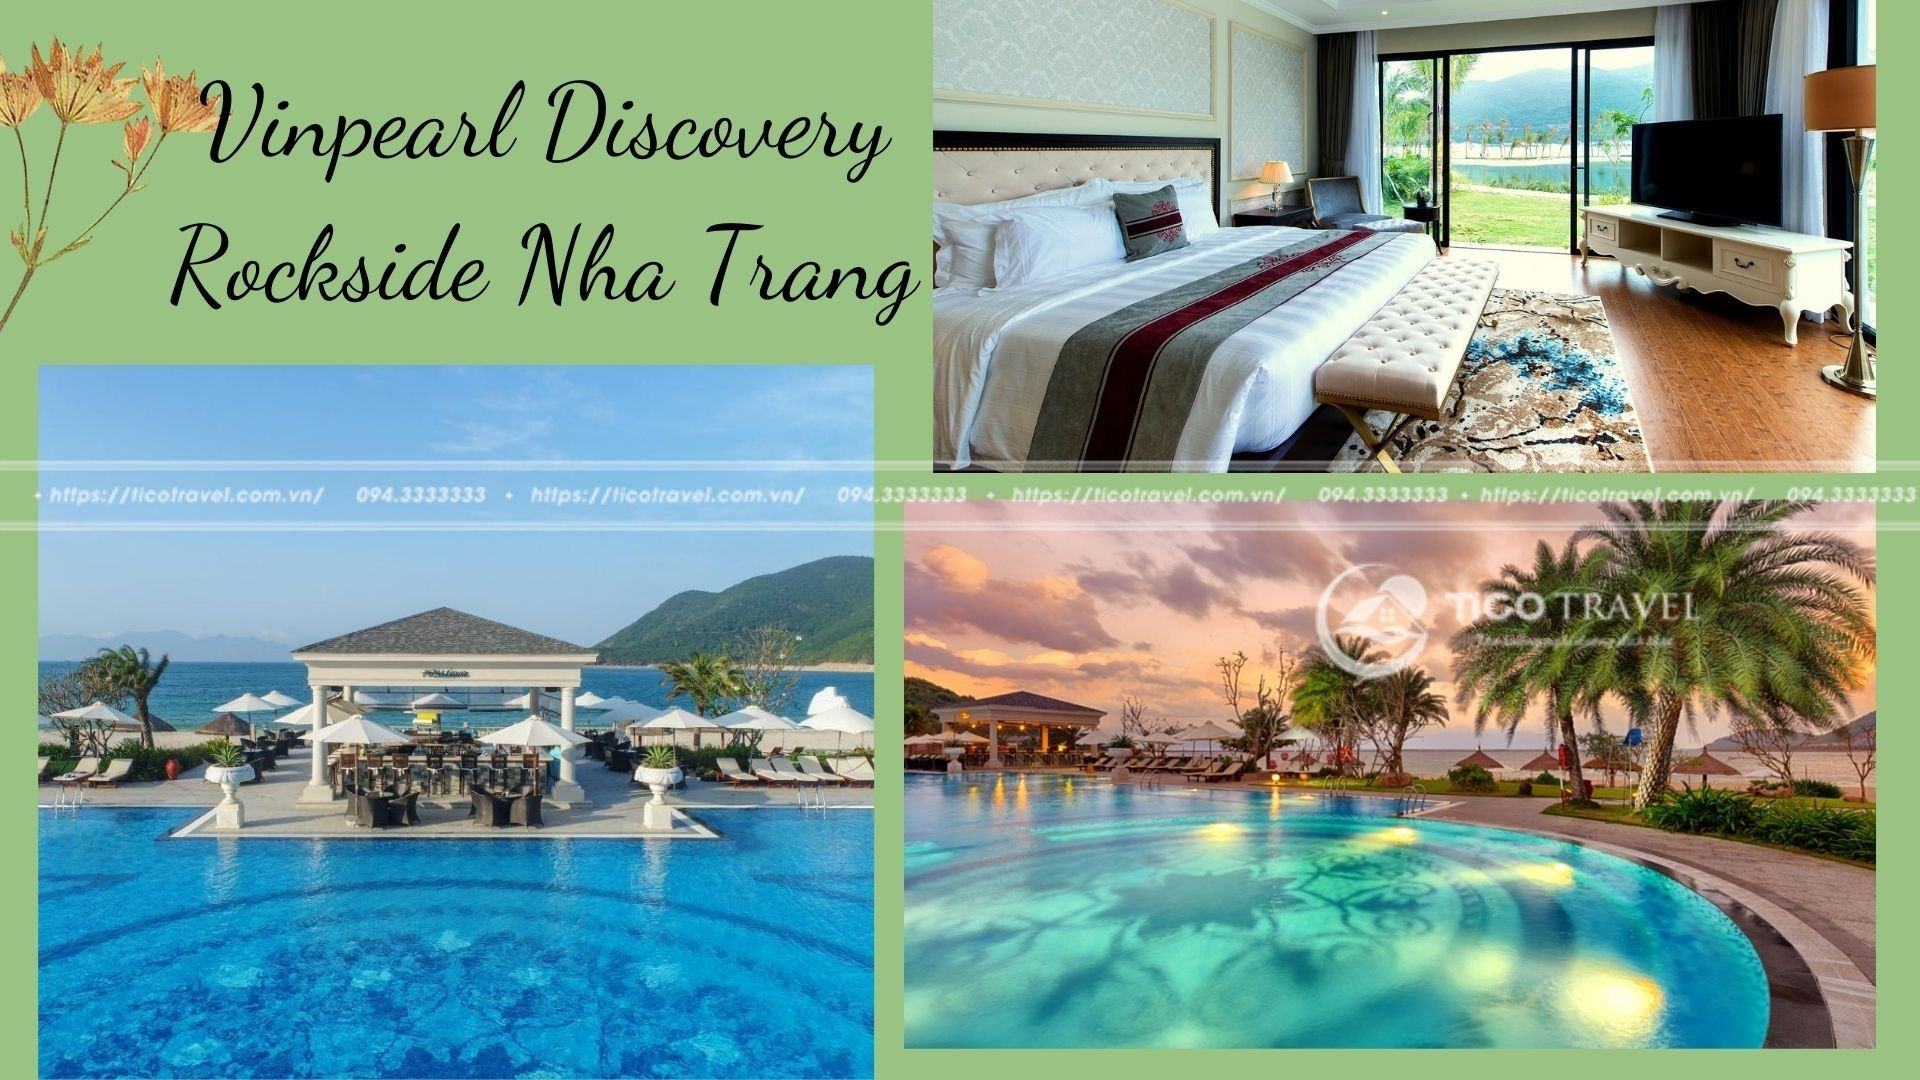 Top 20 Khu nghỉ dưỡng Resort Nha Trang đẹp giá rẻ view biển 